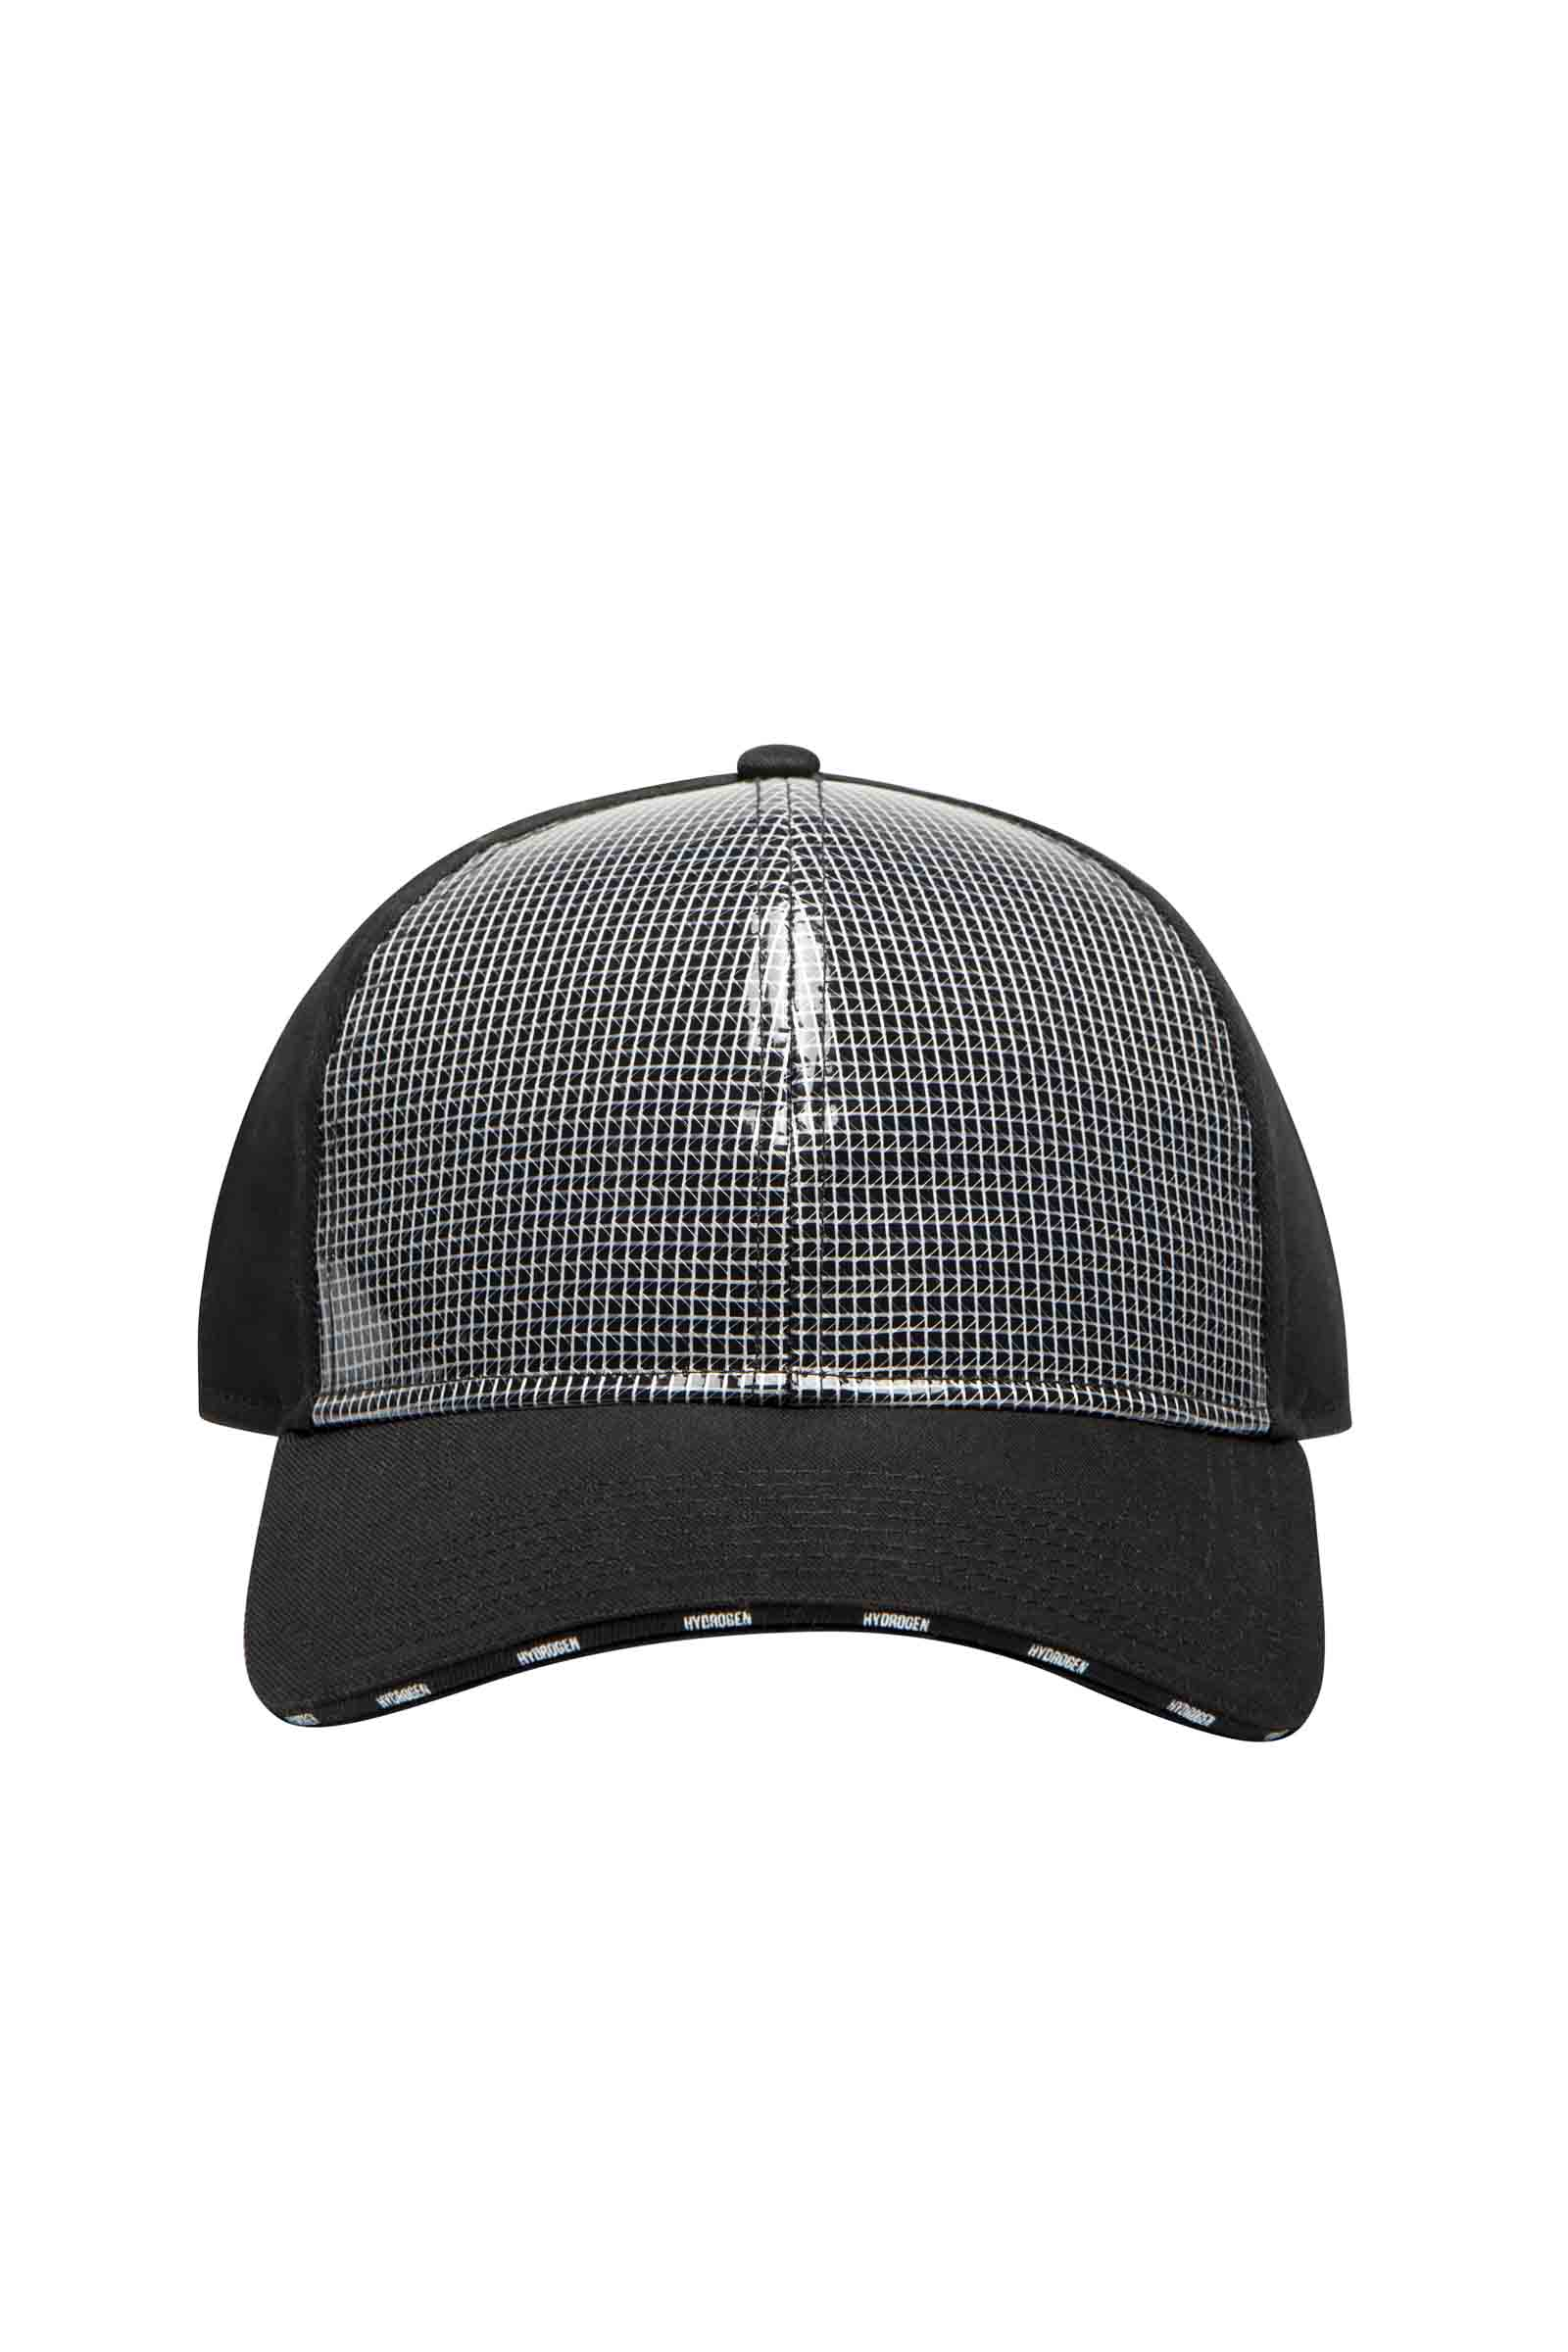 CAP - Accessories - Hydrogen - Luxury Sportwear